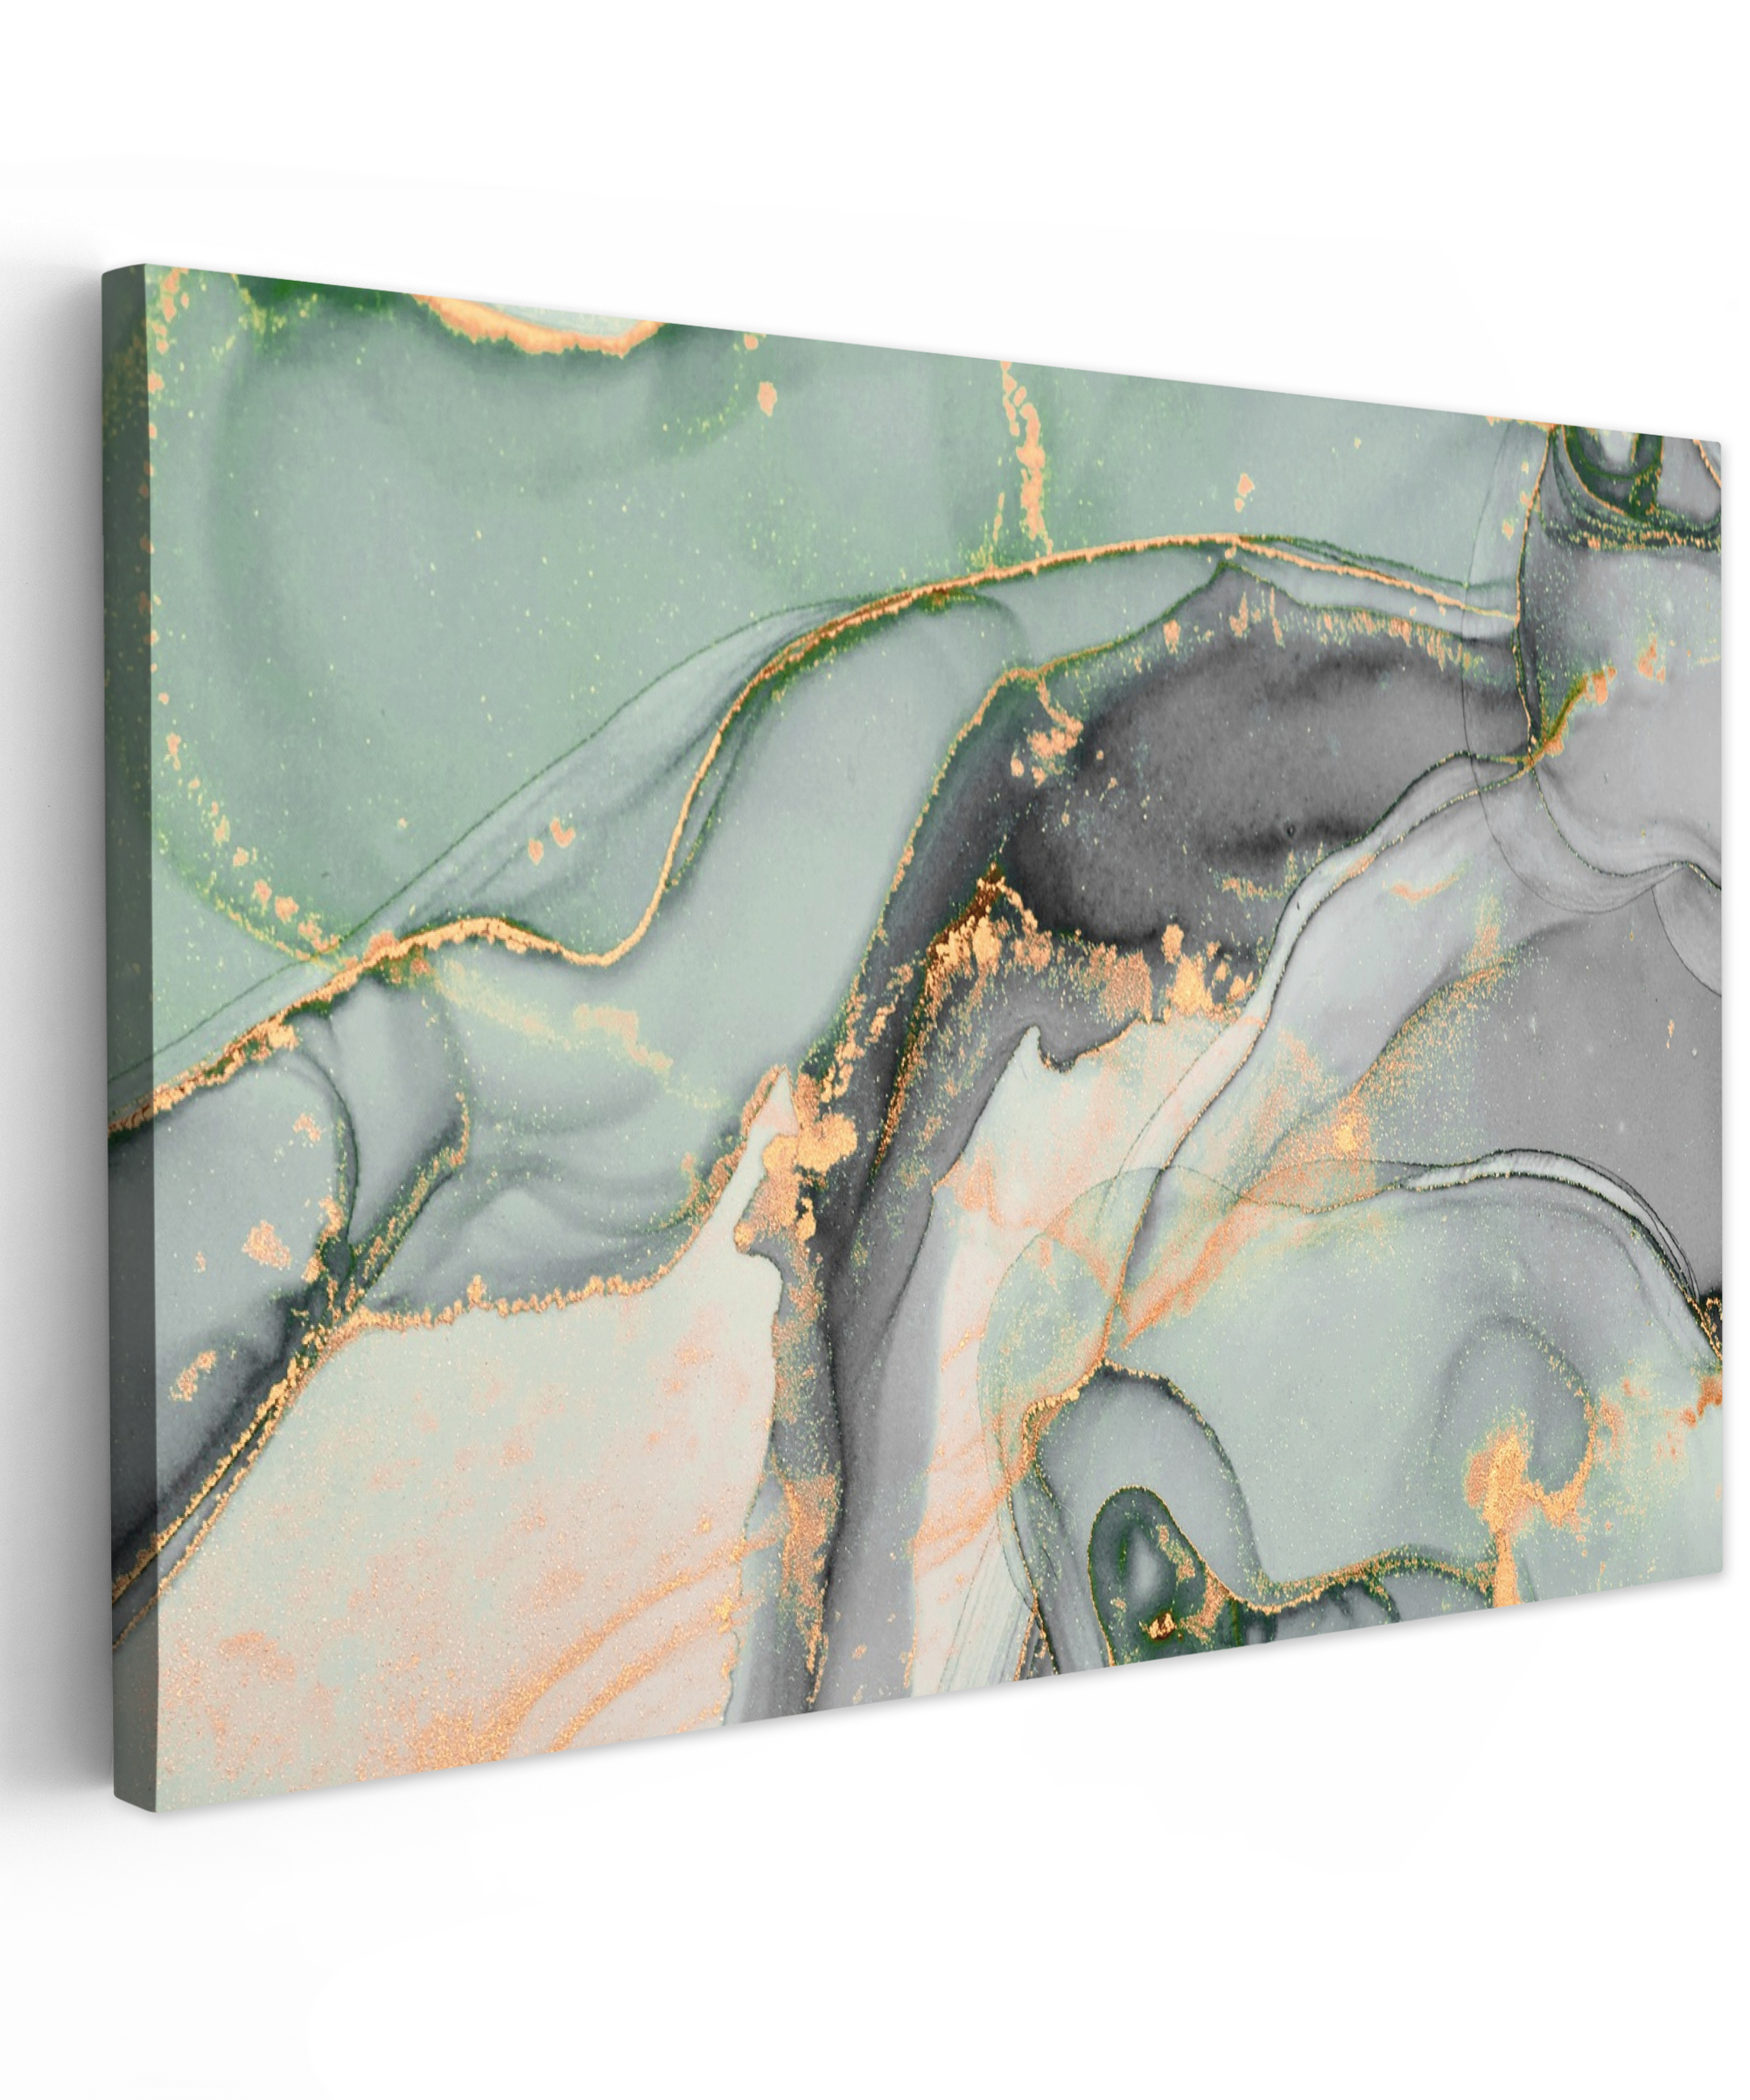 Tableau sur toile - Or - Marbre - Vert - Luxe - Paillettes - Aspect marbre